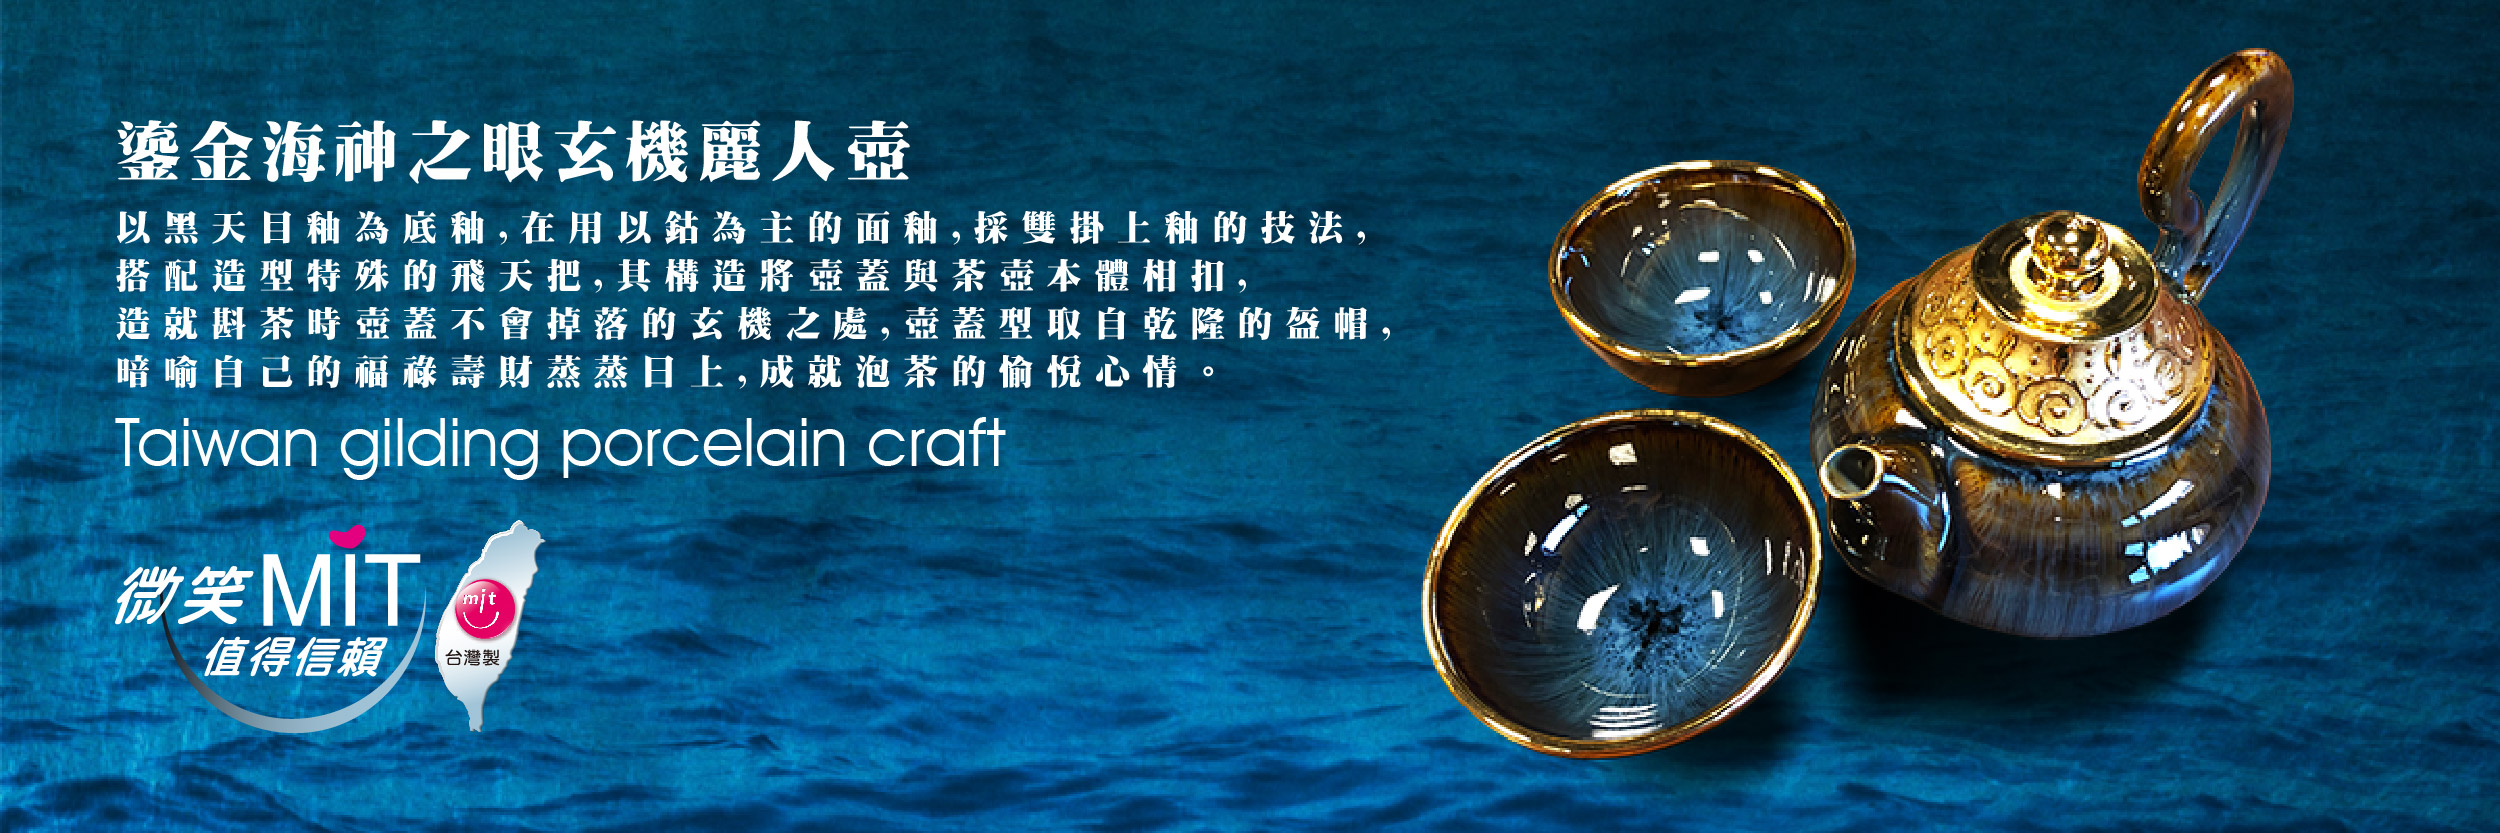 【微笑台灣MIT認證金選】鎏金海神之眼玄機麗人壺組 Taiwan gilding porcelain craft